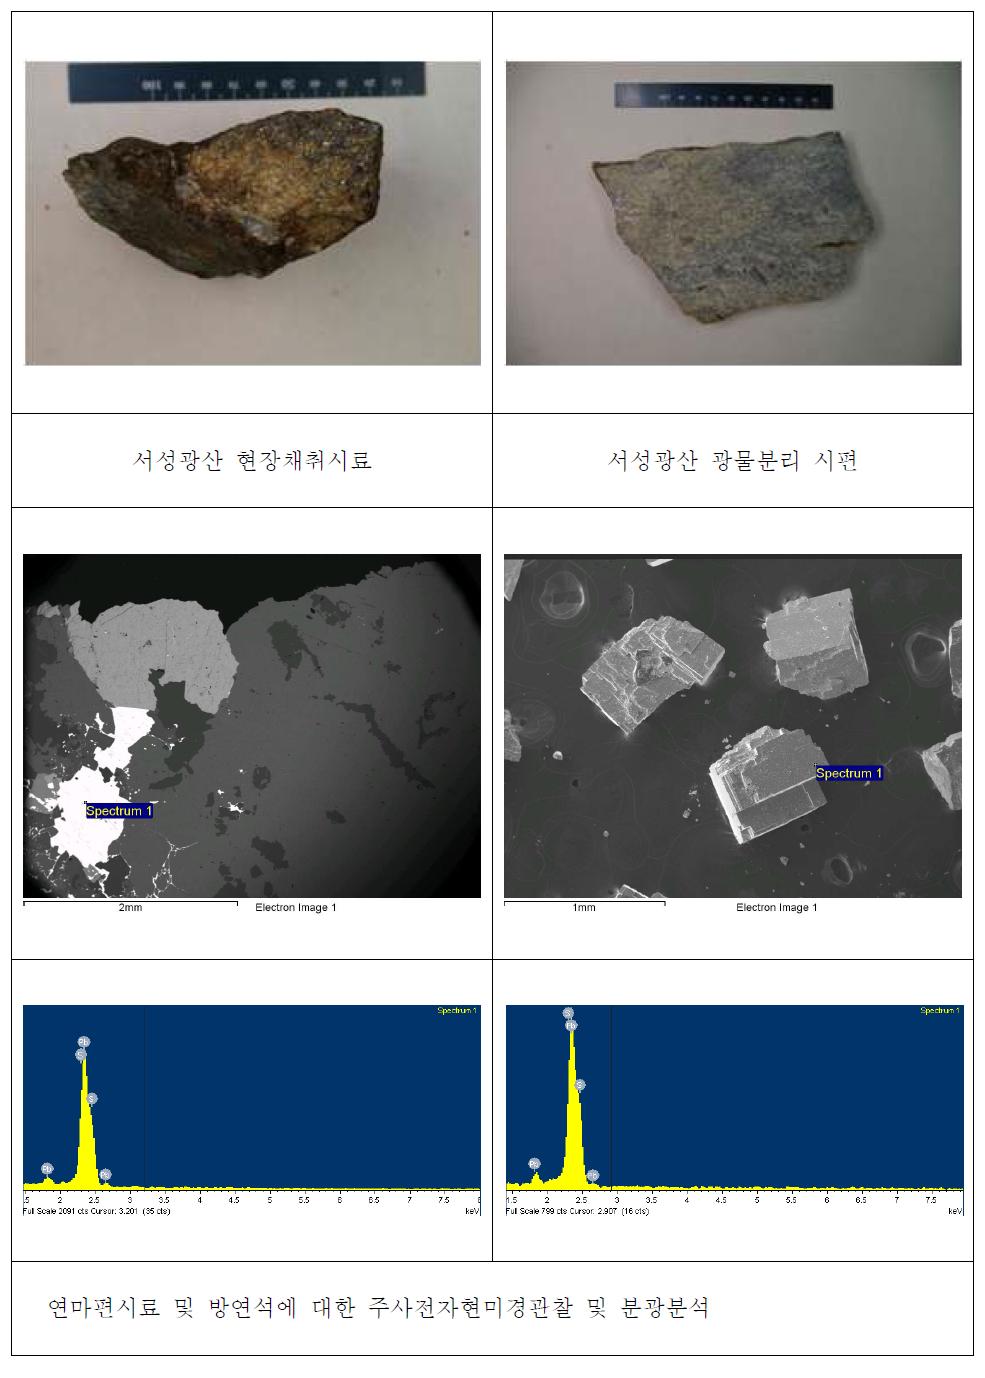 서성광산 연마편시료 및 방연석시료의 주사전자현미경관찰 및 분광분석